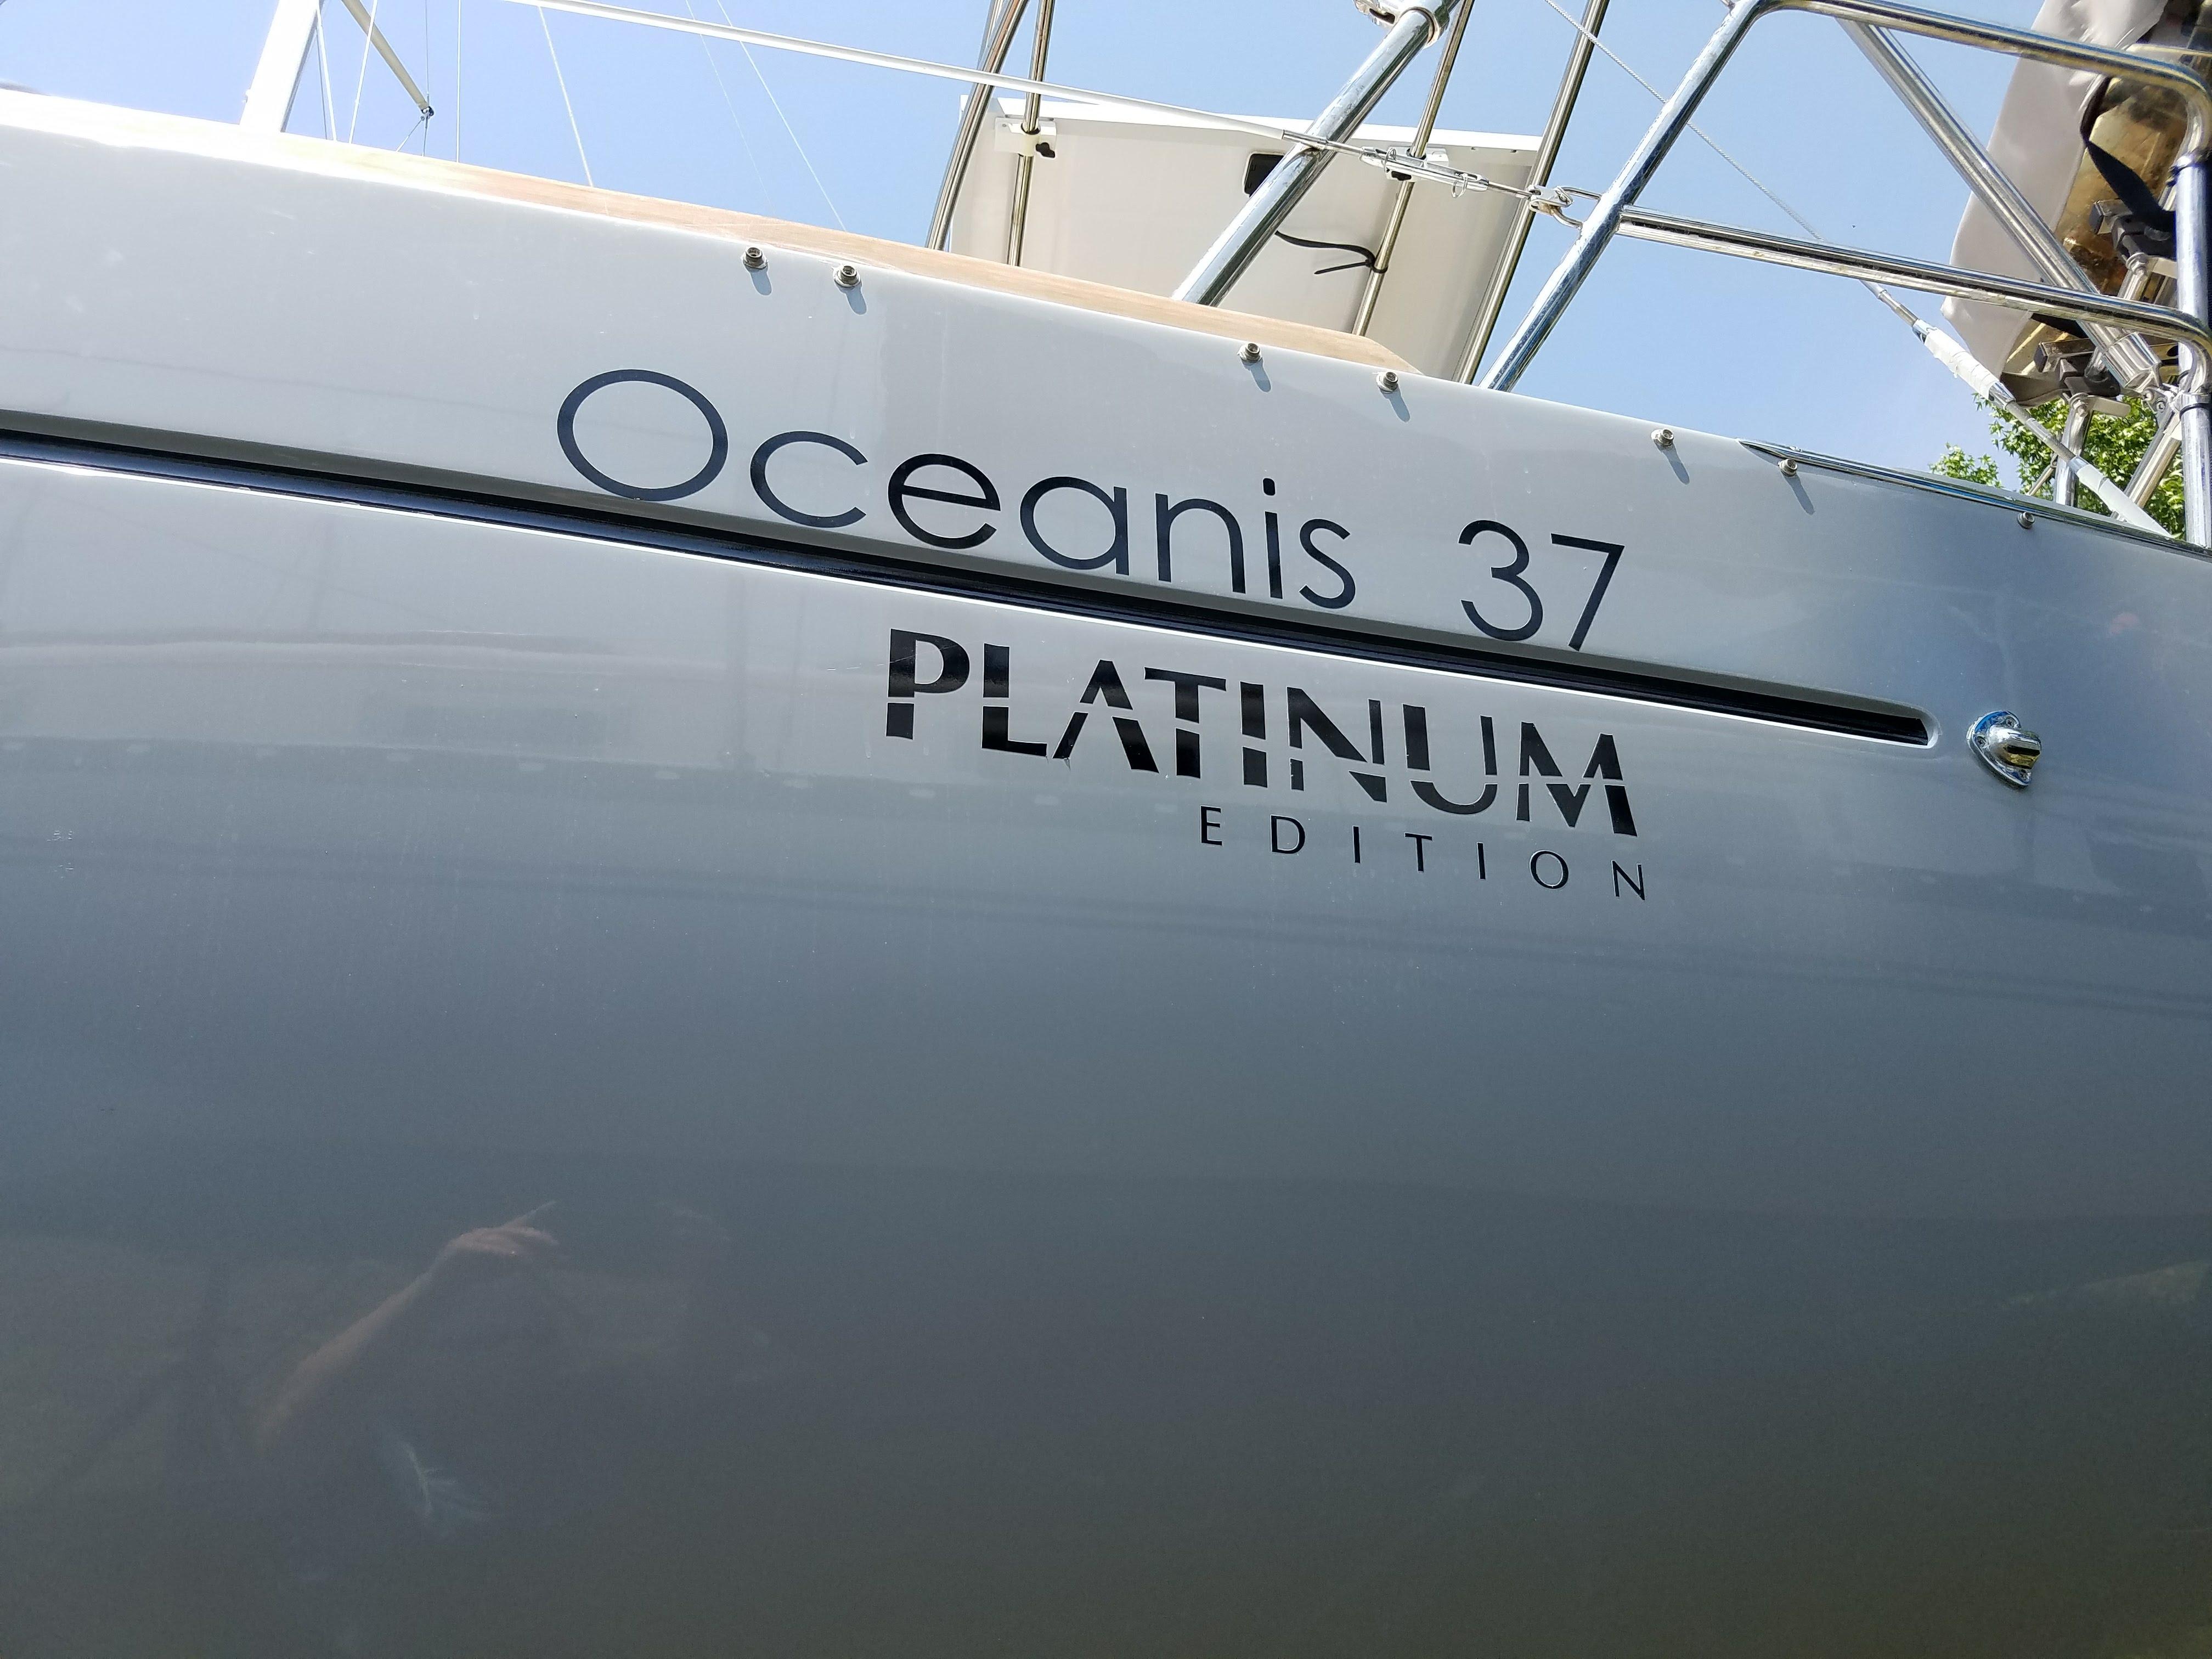 37' Beneteau OCEANIS PLATINUM EDITION